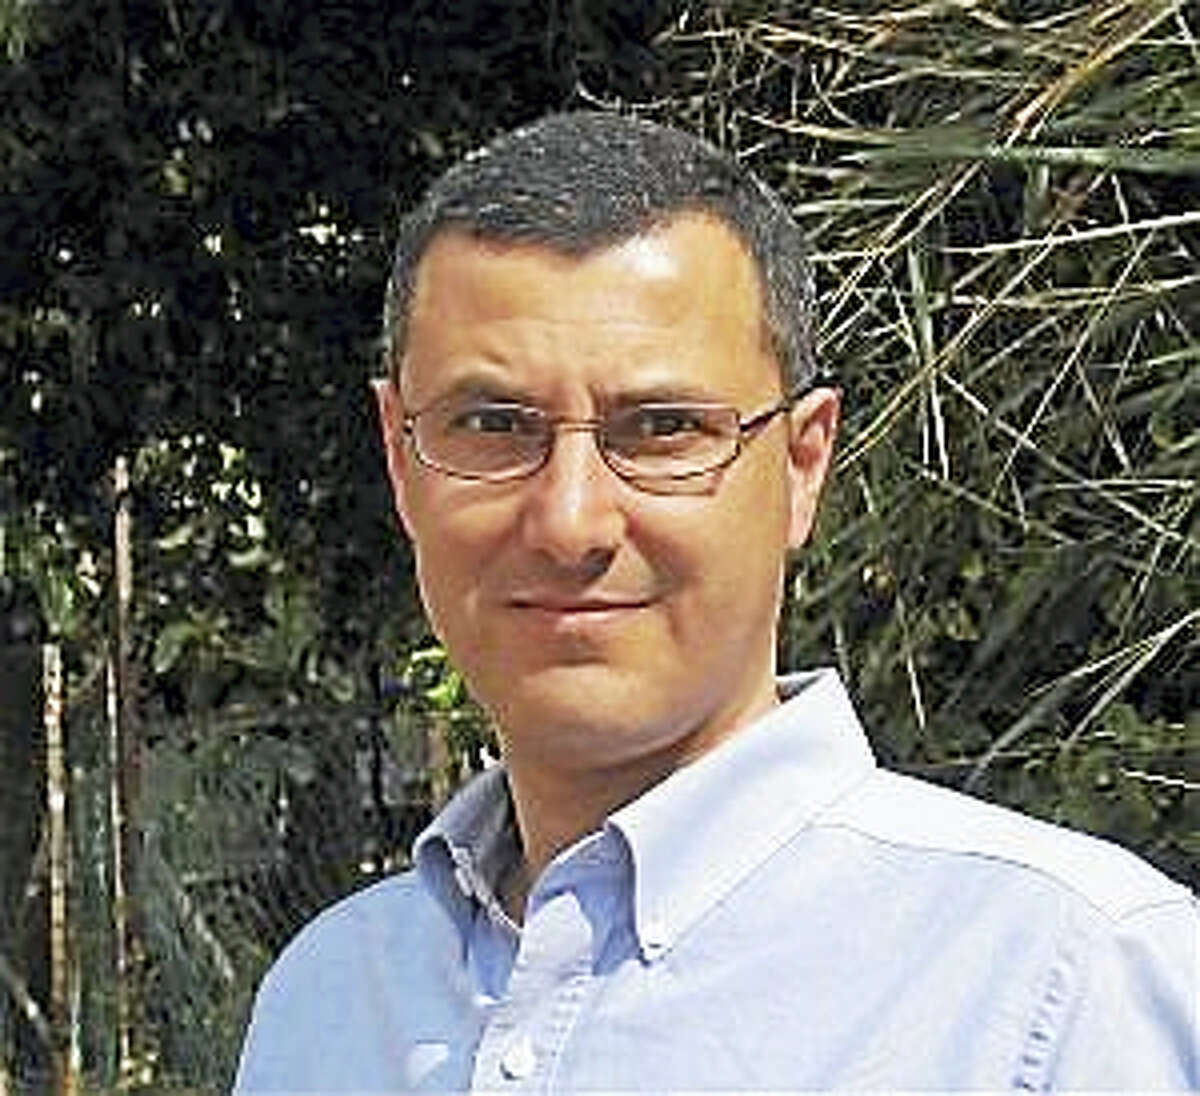 Omar Barghouti